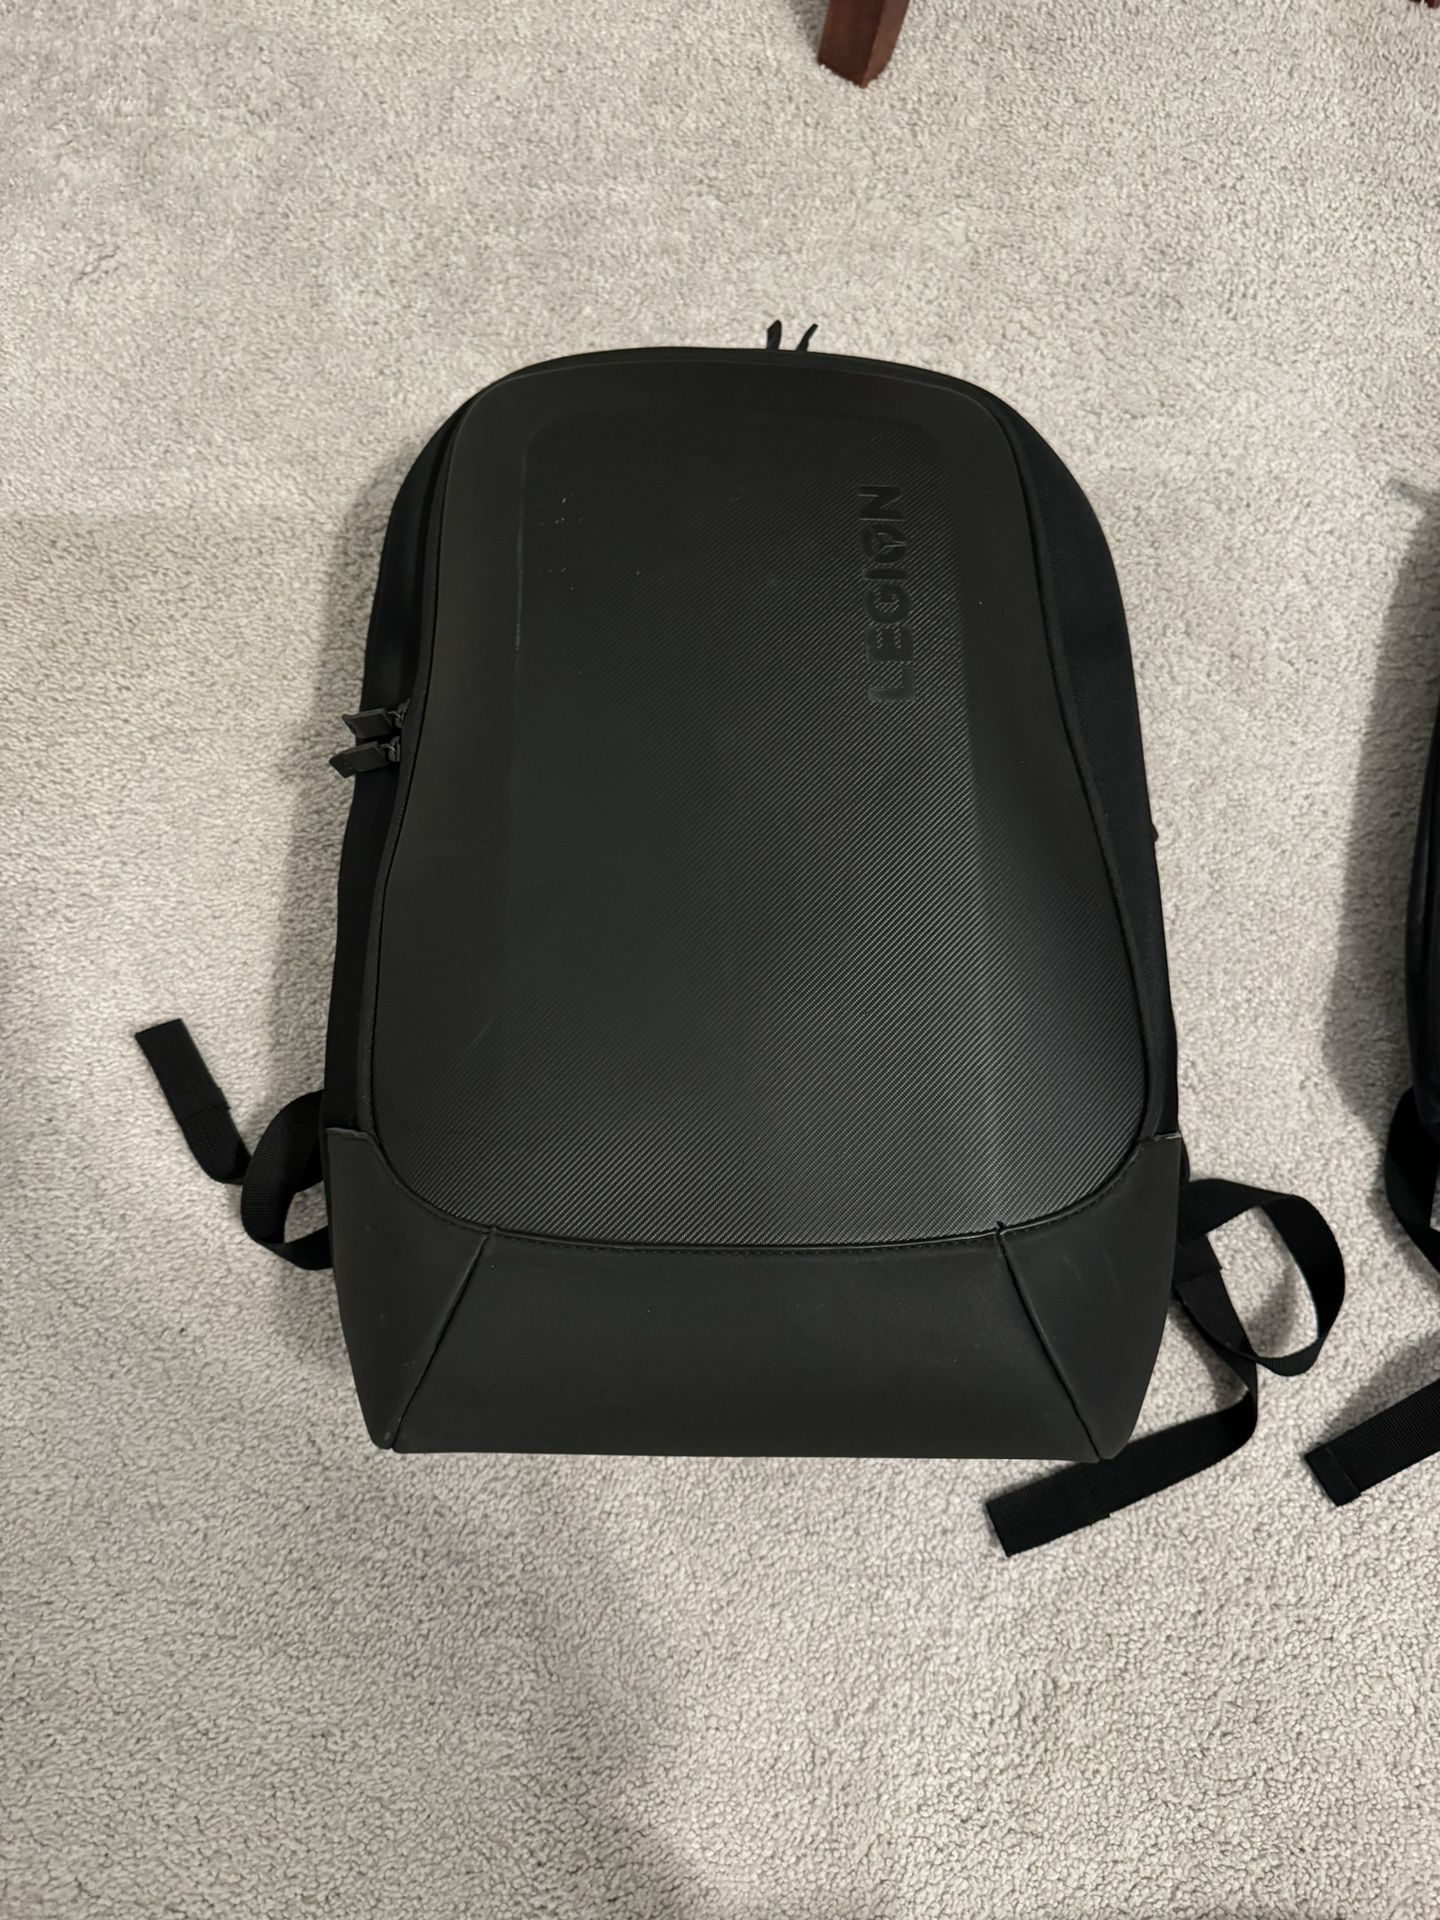 Like New - Lenovo Legion Gaming Backpack - Black